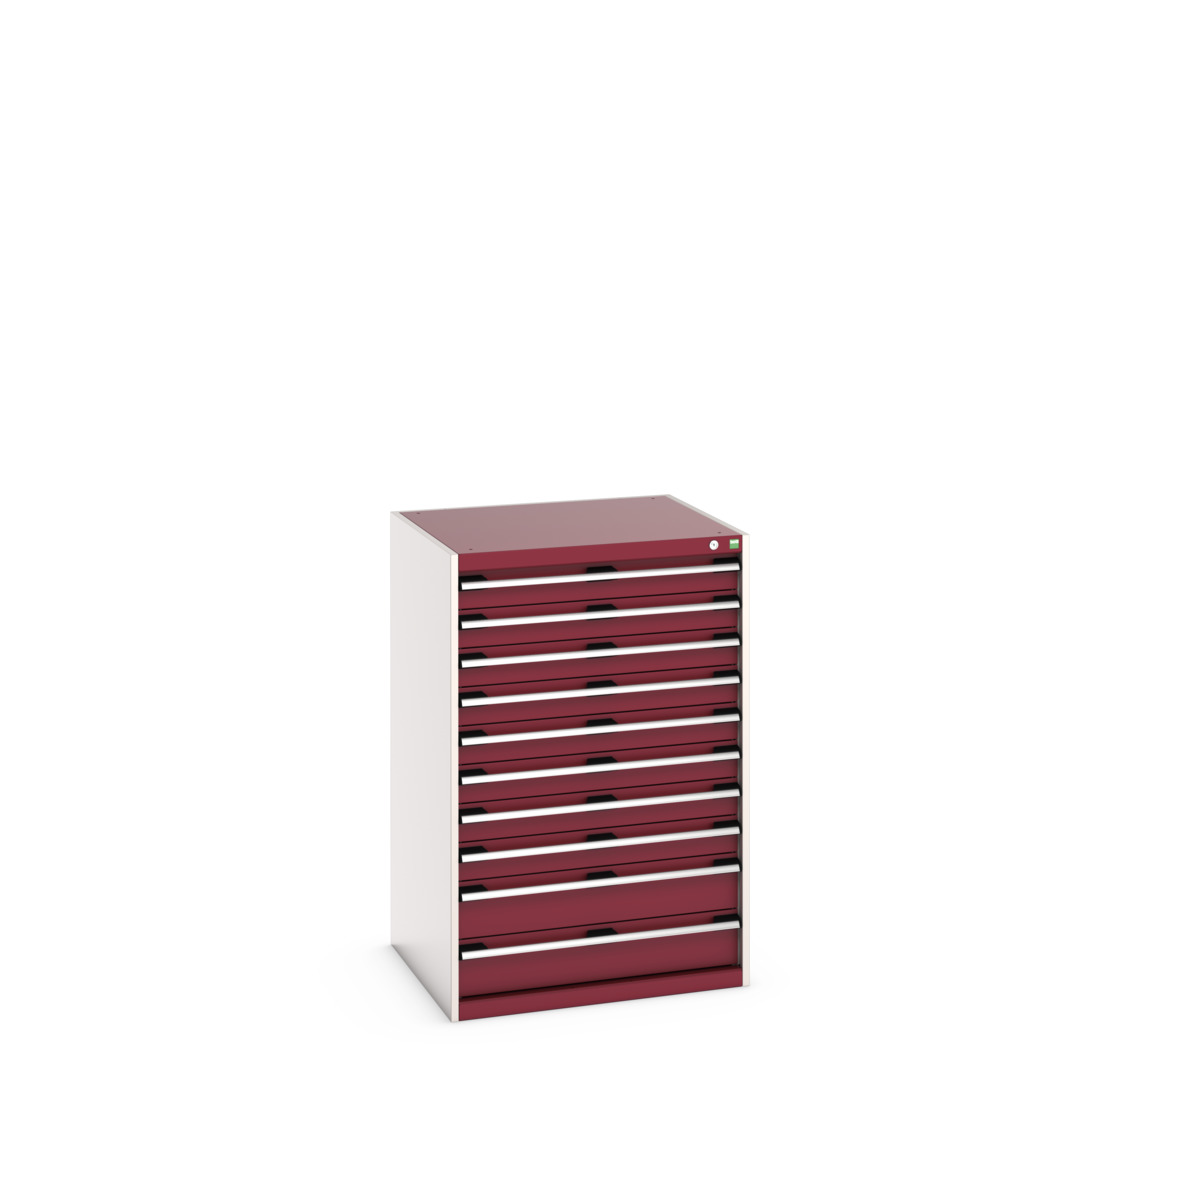 40028038.24V - cubio drawer cabinet